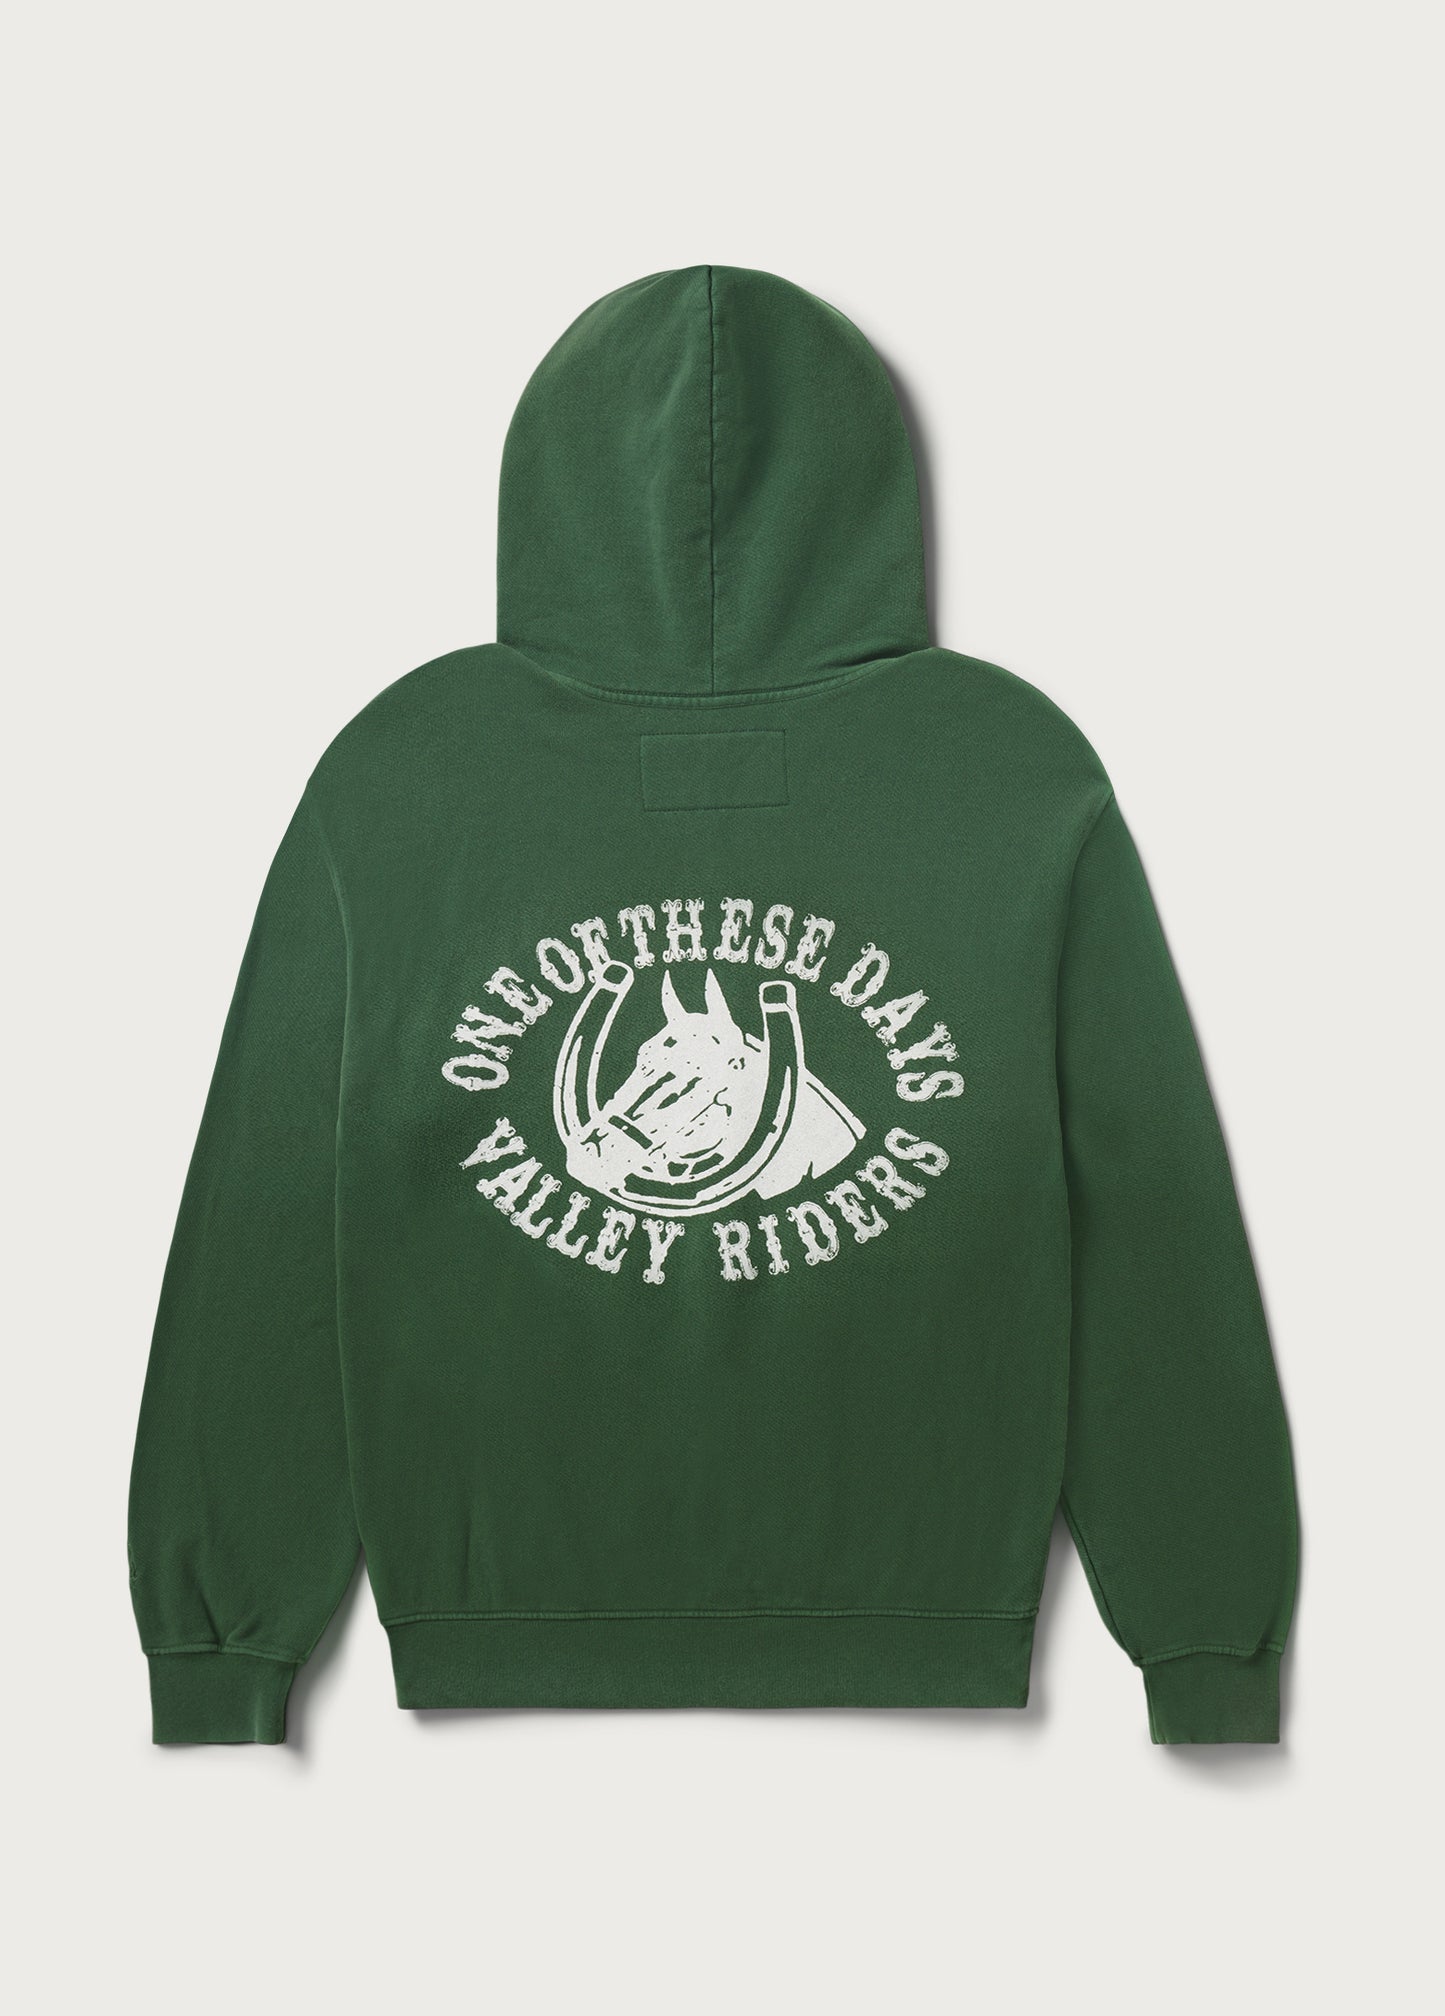 Valley Rider Hooded Sweatshirt | Forest Green